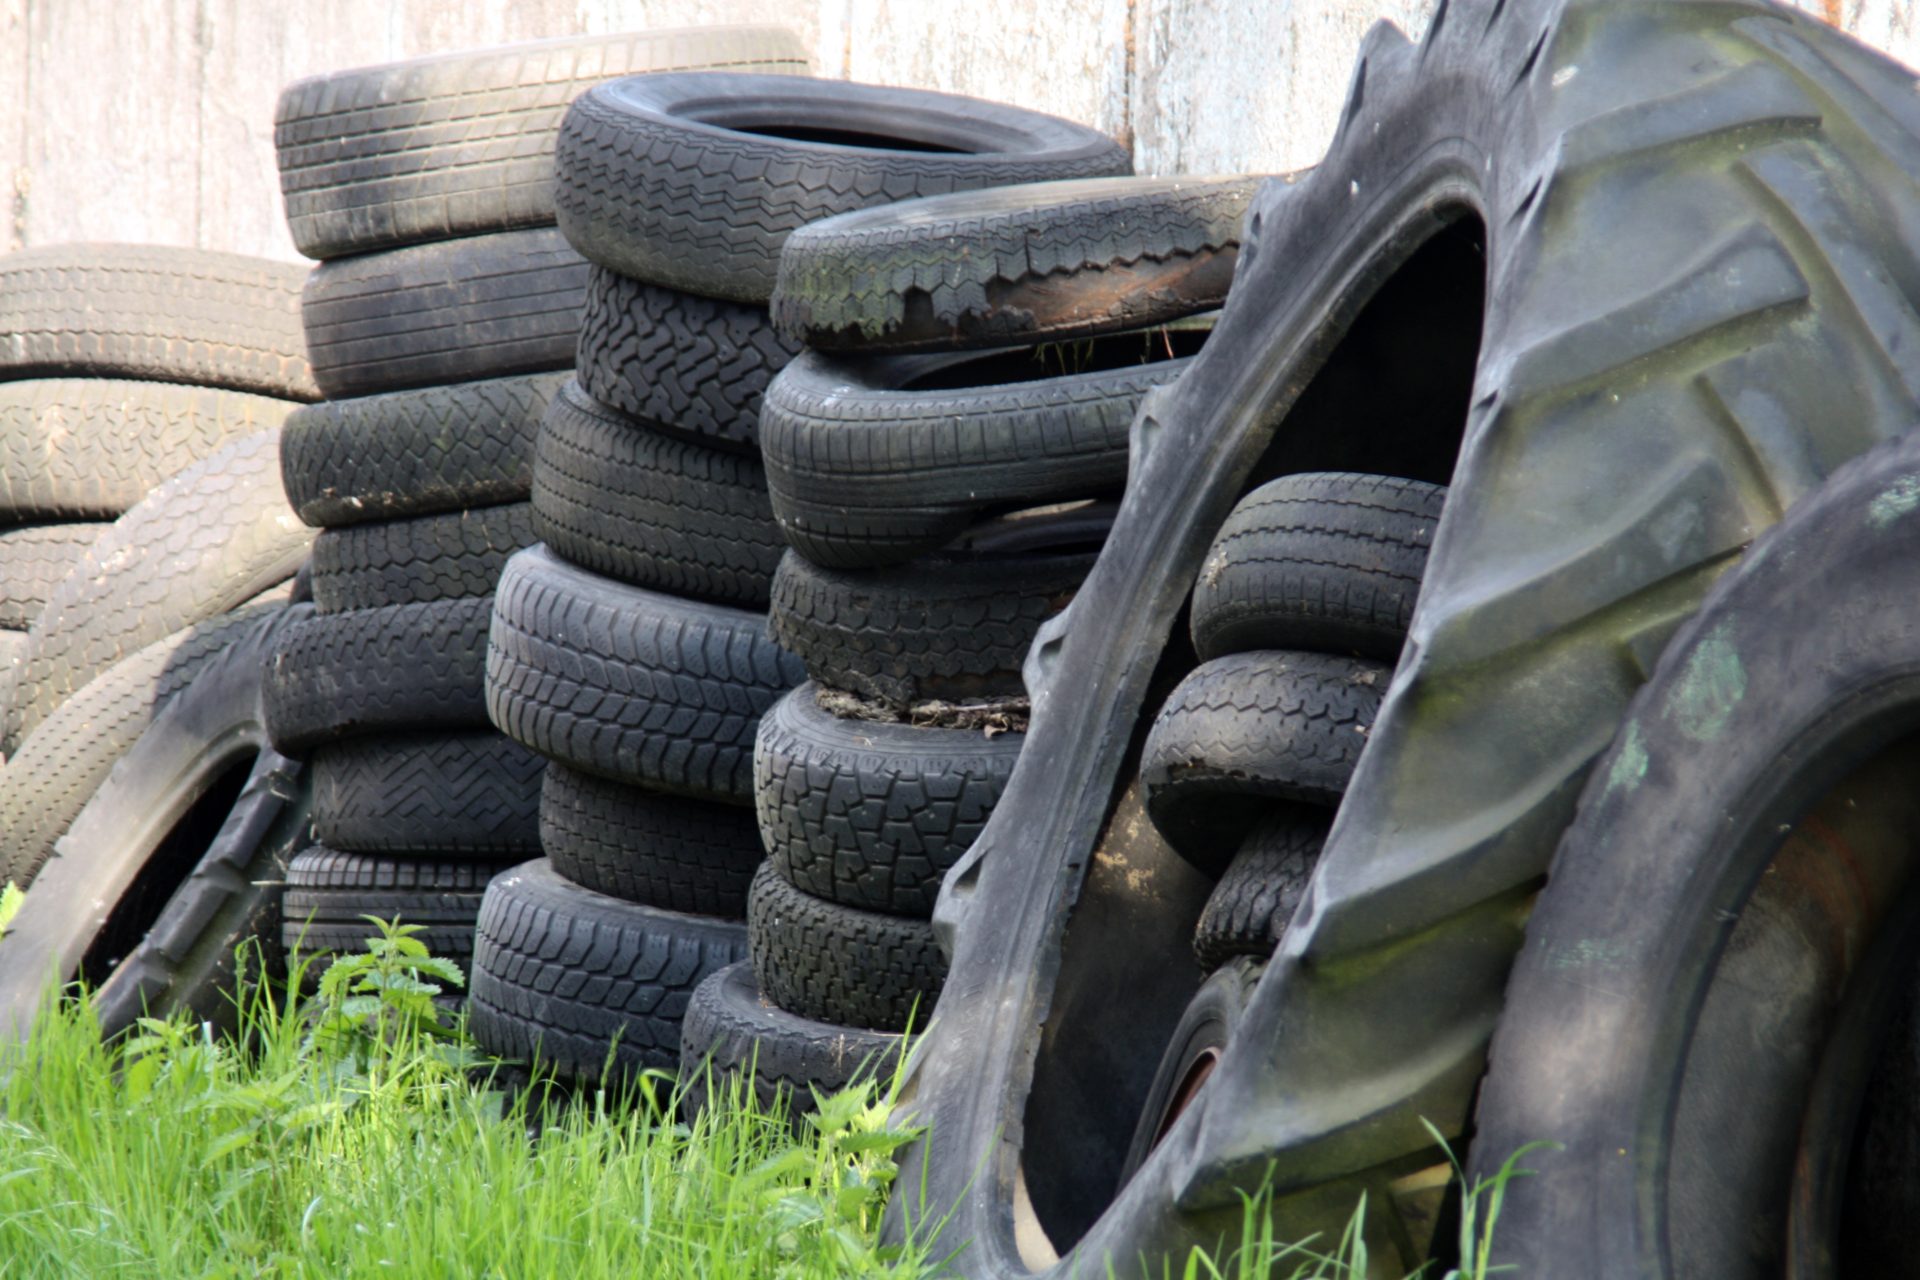 Recyclage des pneus — Wikipédia